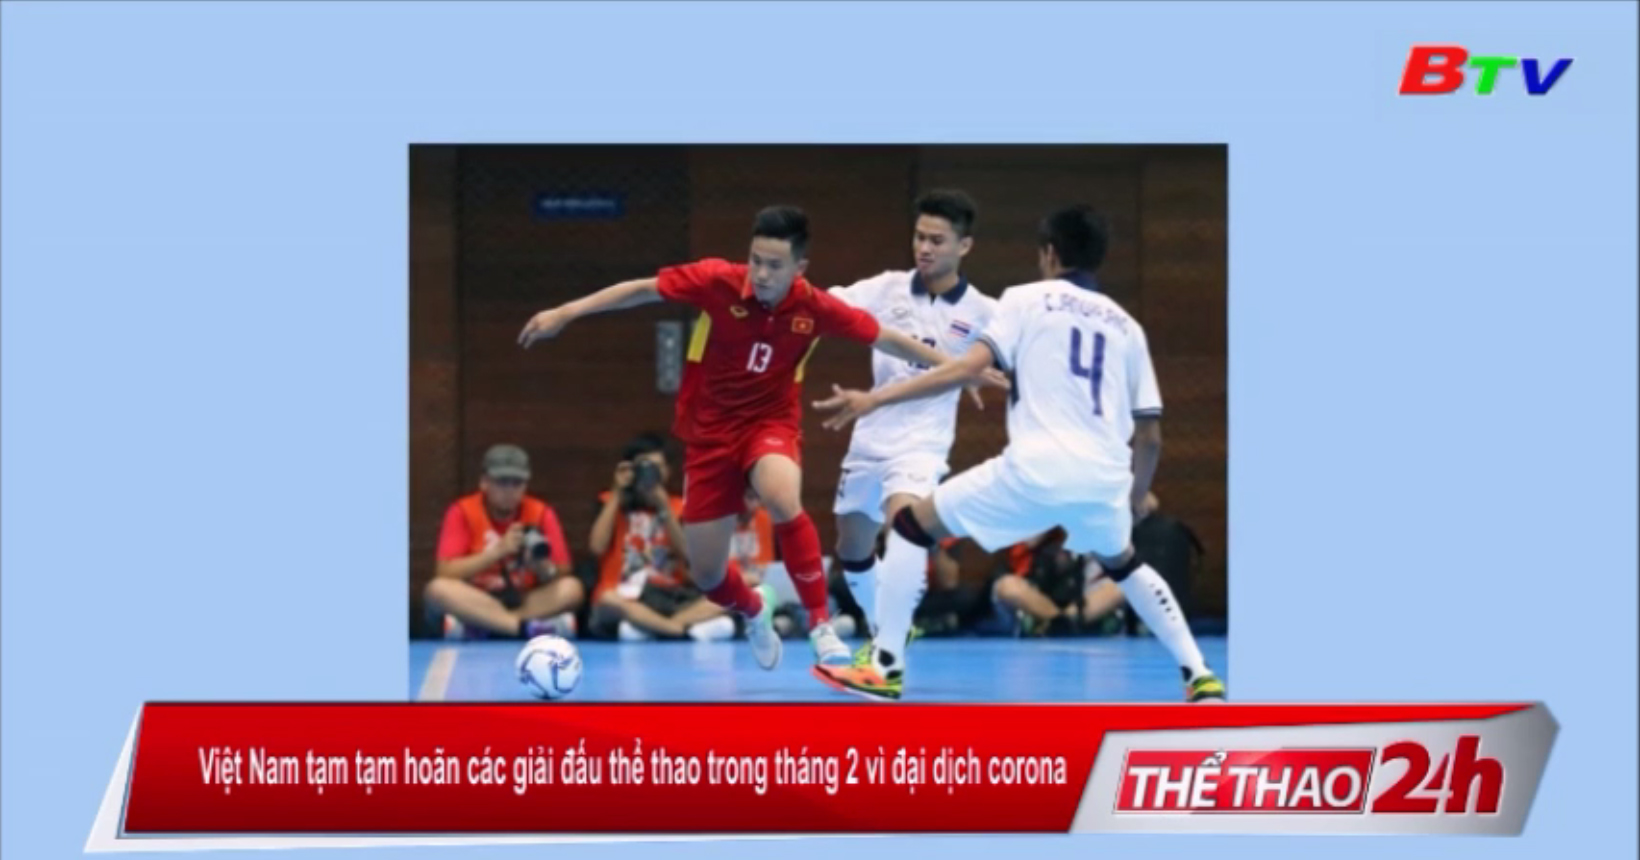 Việt Nam tạm hoãn các giải đấu thể thao trong tháng 2 vì đại dịch corona